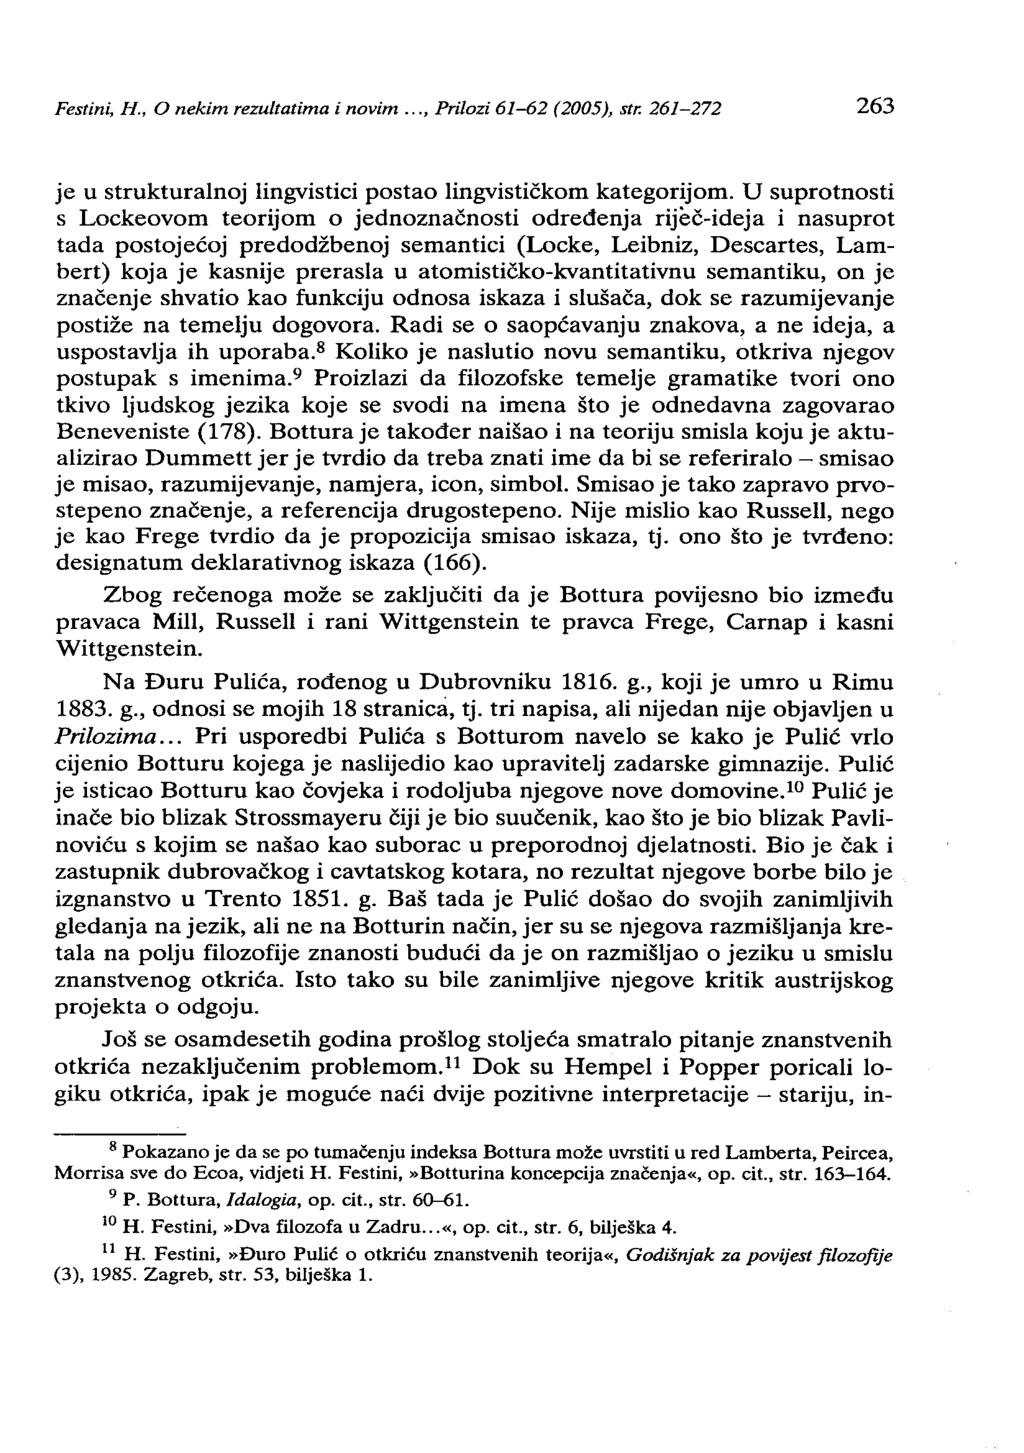 Festin~ H., o nekim rezultatima i novim..., Prilozi 61-62 (2005), str. 261-272 263 je u strukturalnoj lingvistici postao lingvističkom kategorijom.